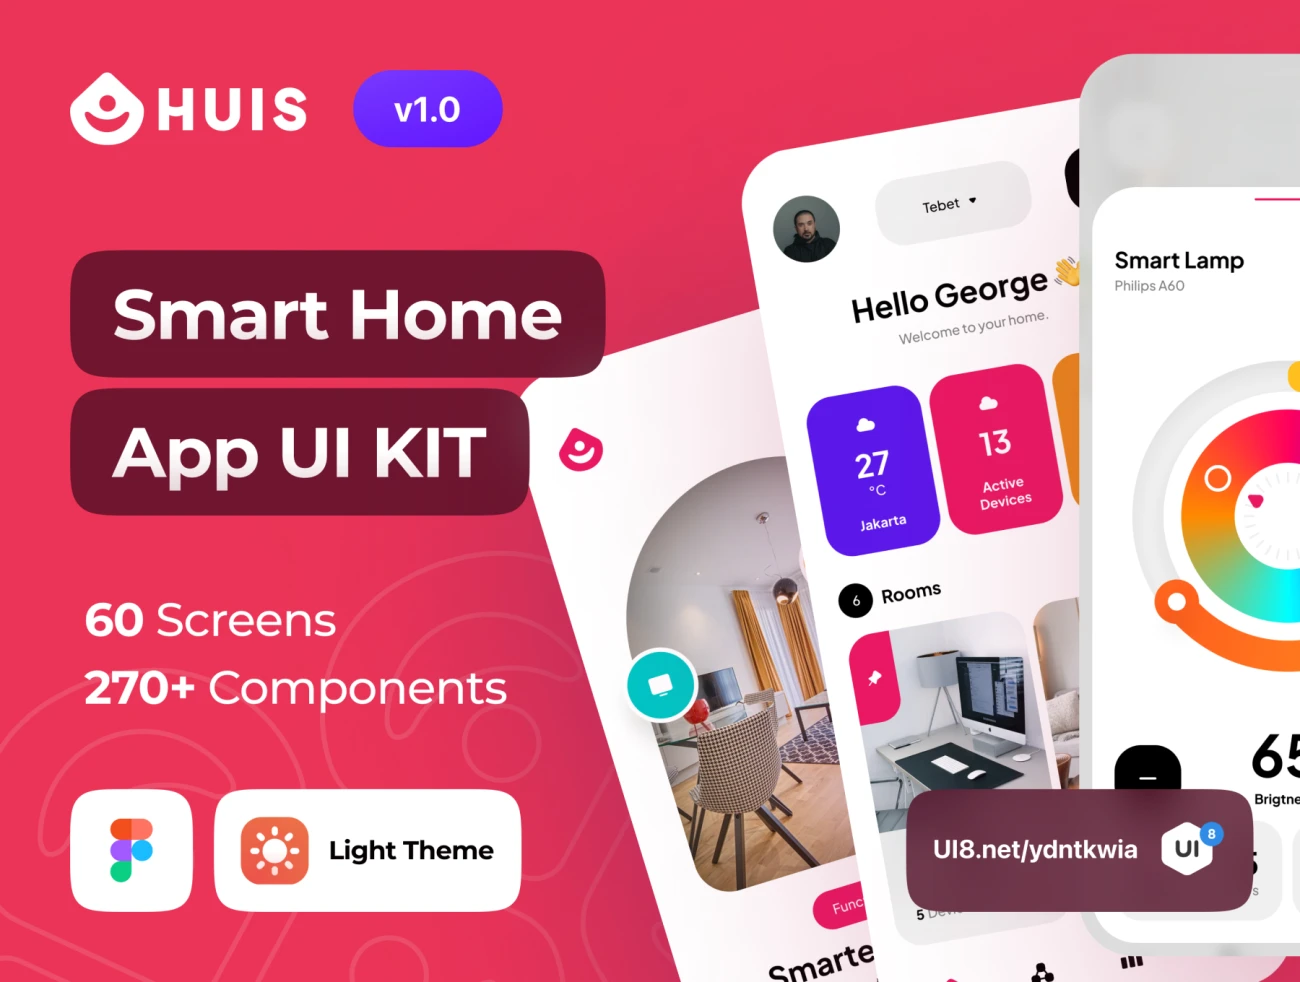 智能家居应用程序 UI 套件60屏 Huis - Smart Home App UI Kit .figma-UI/UX、ui套件、主页、列表、卡片式、应用、数据可视化-仪表板、表单-到位啦UI